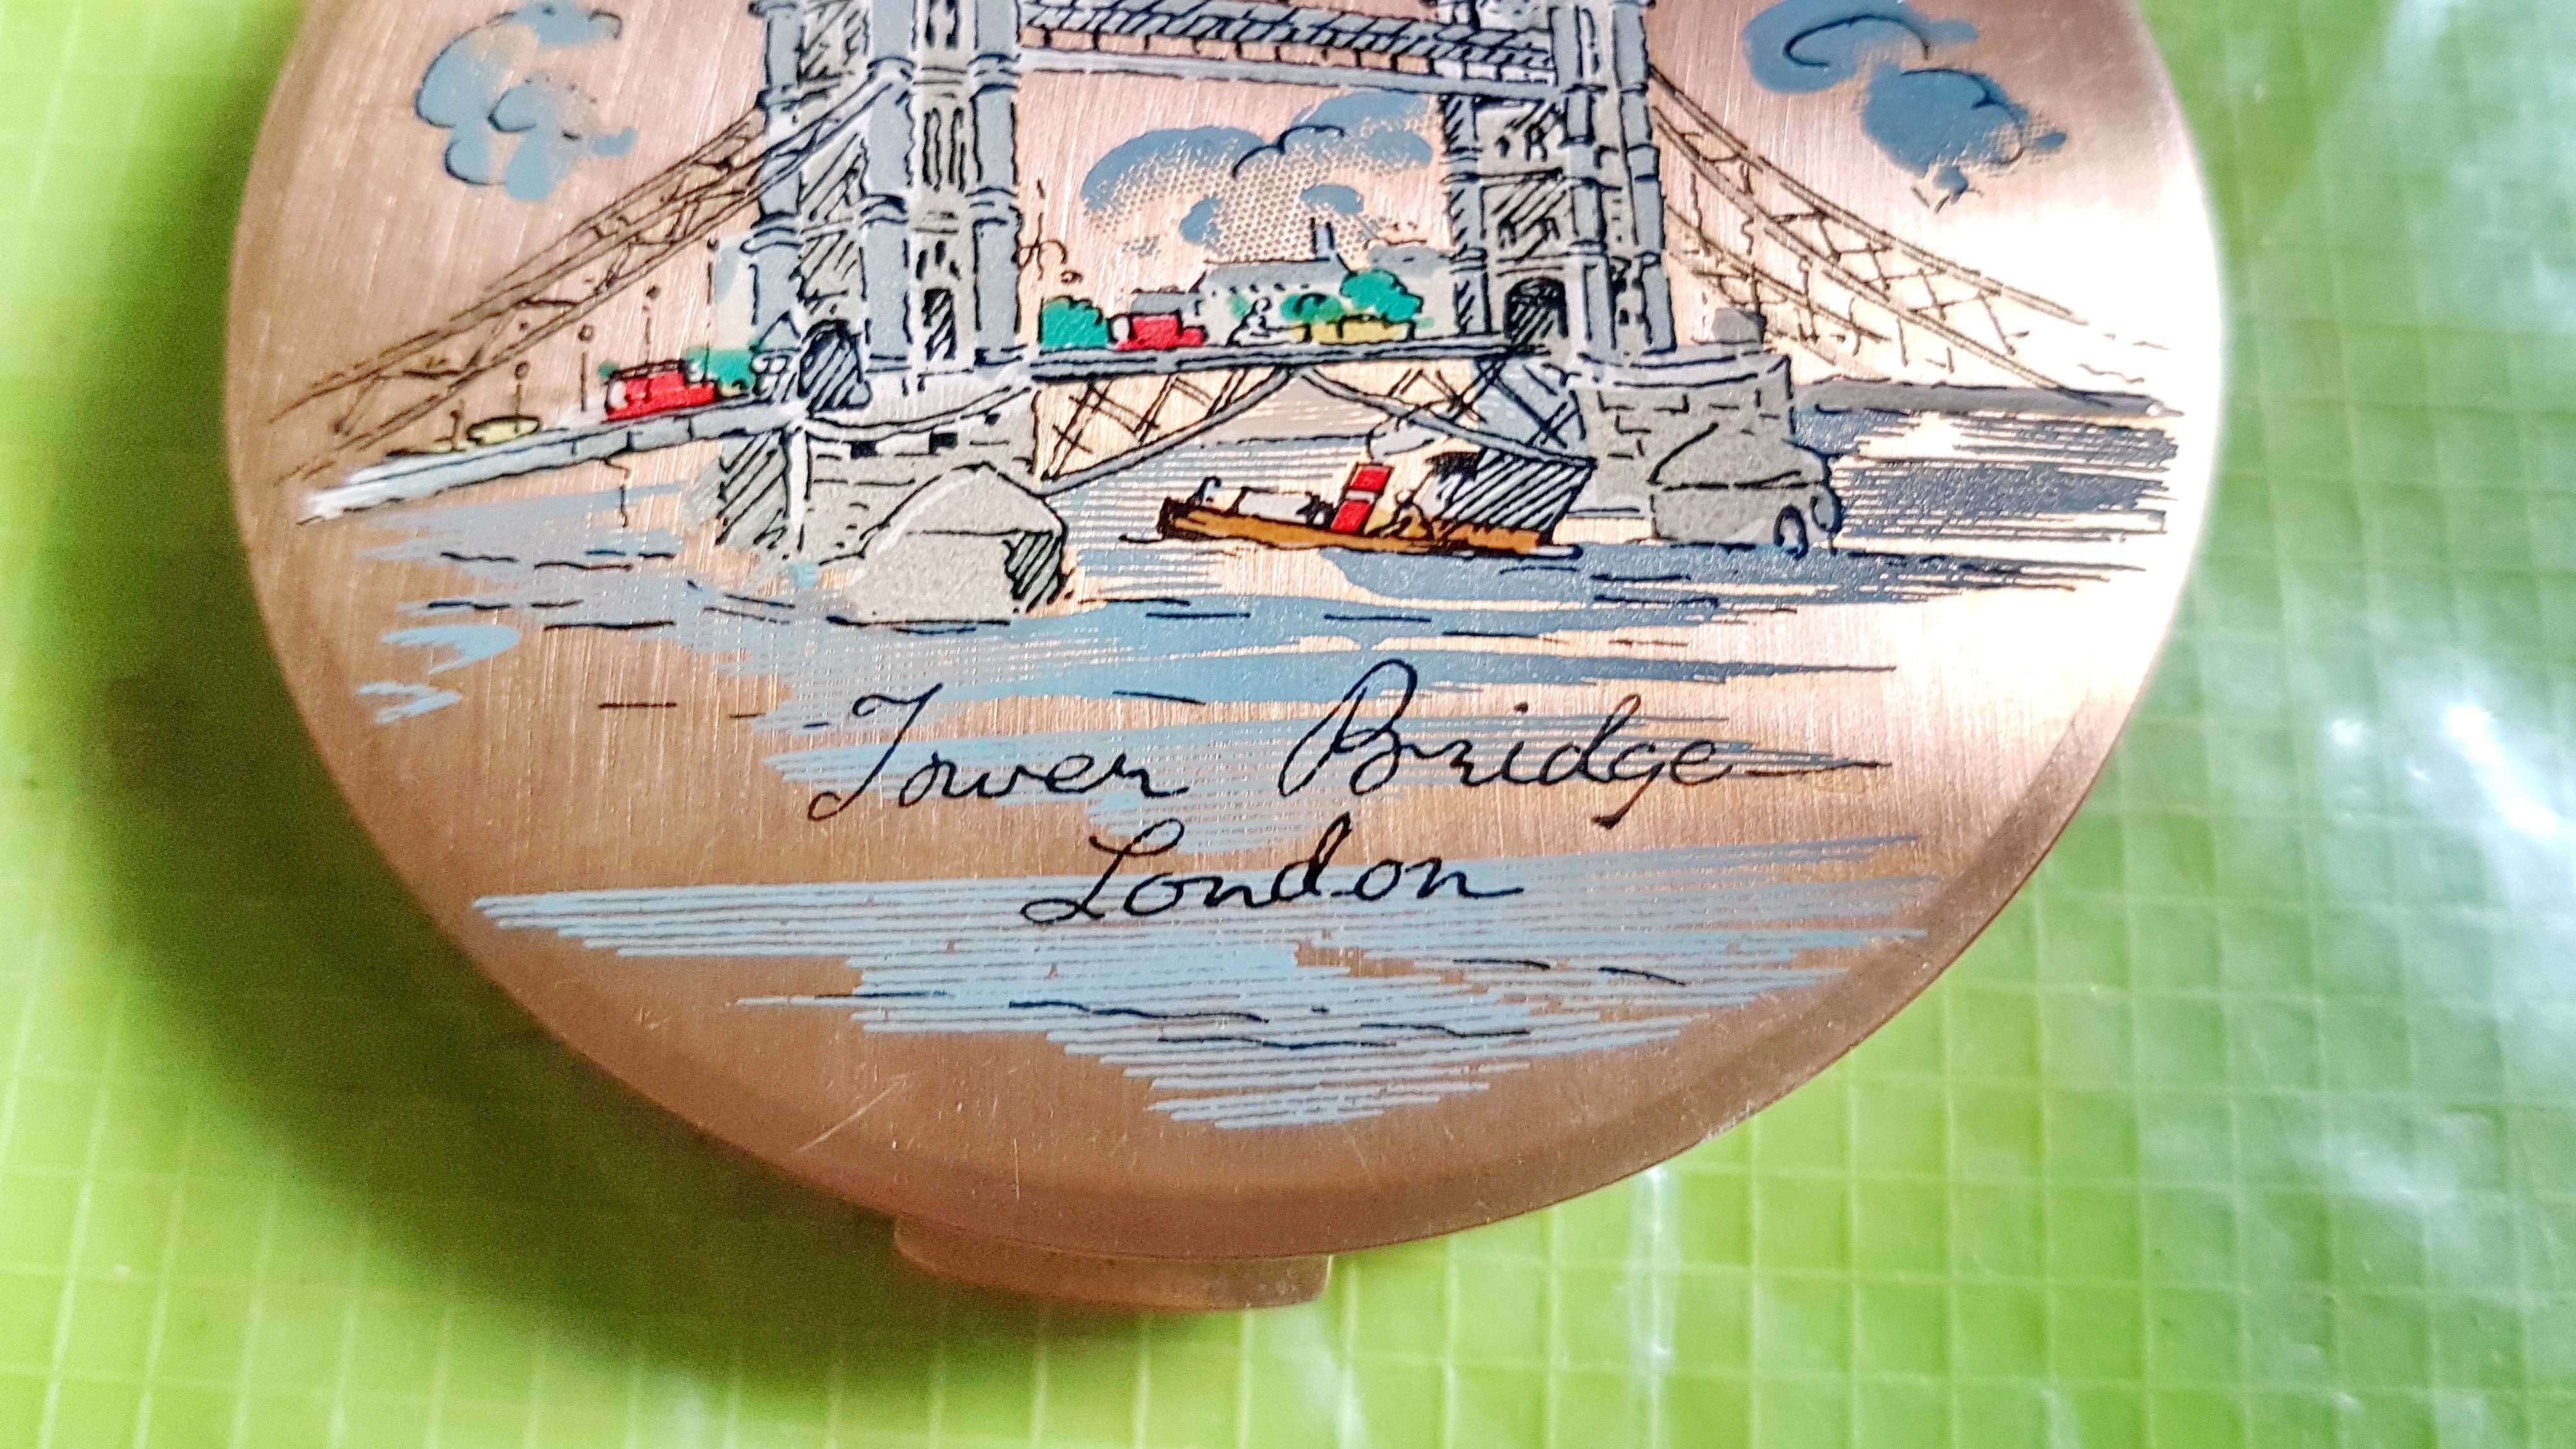 9791-Pudriera Stratton dama poseta-Podul Londrei Anglia alama aurita.